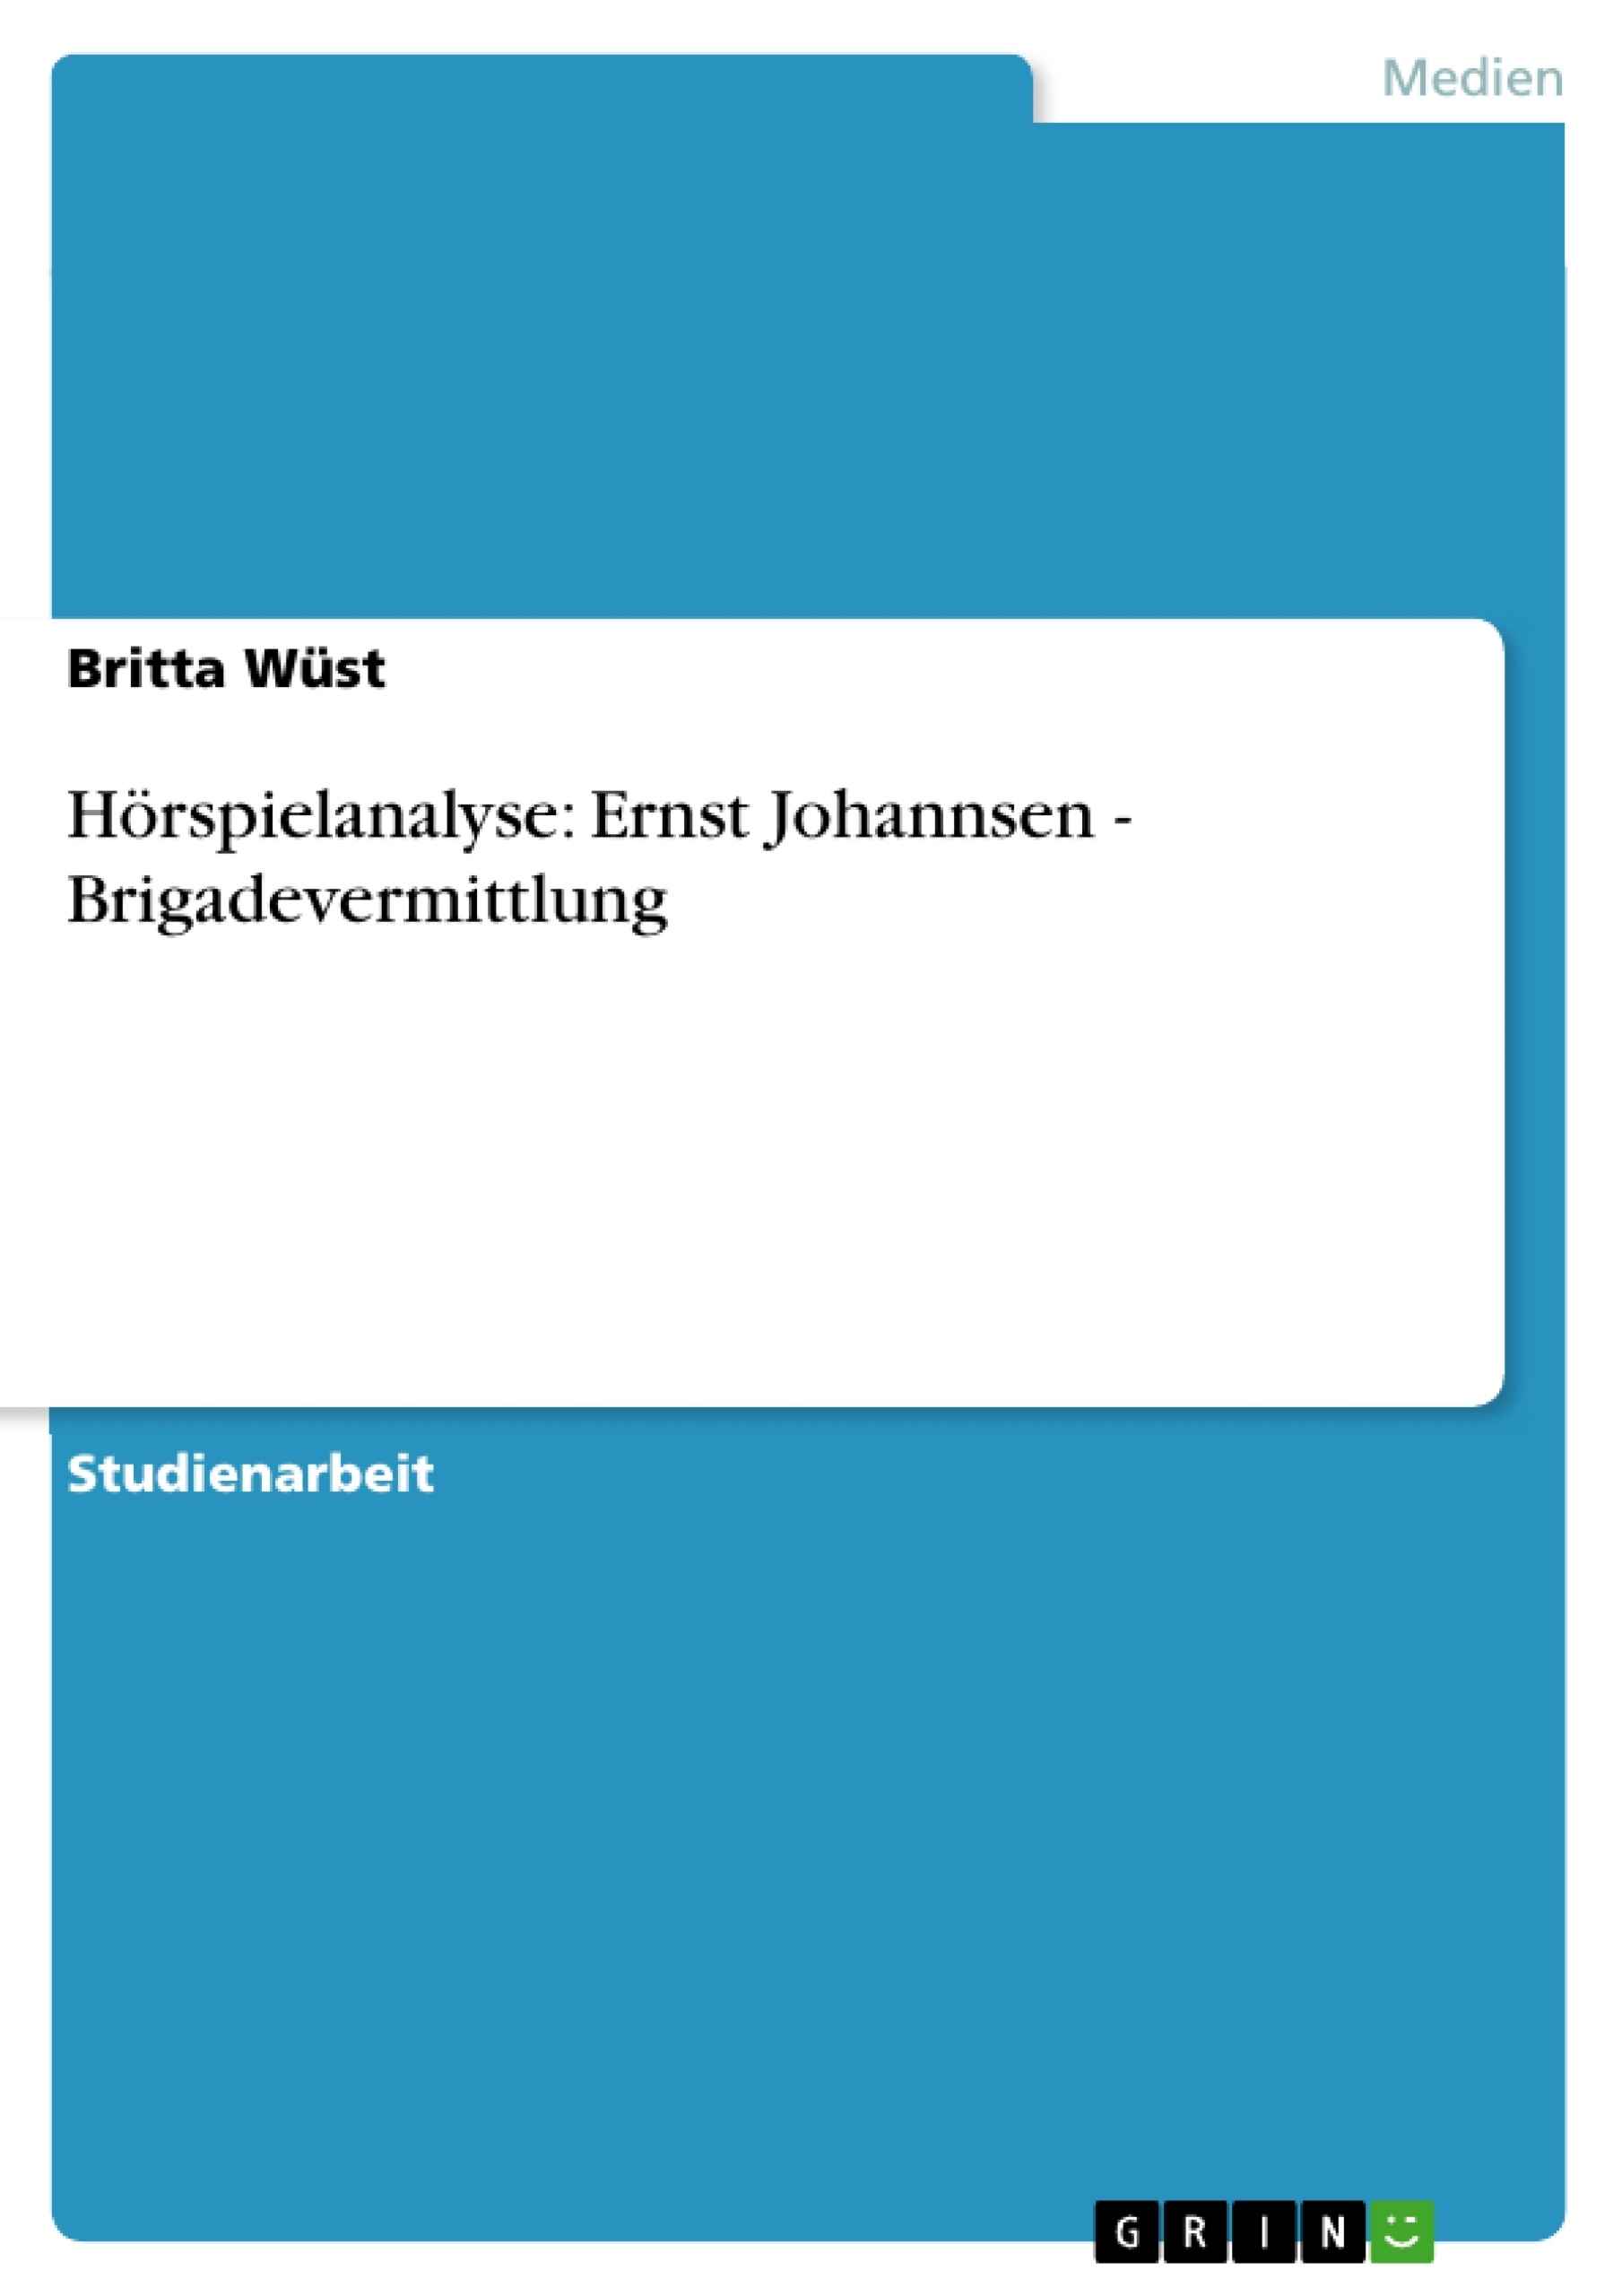 Titel: Hörspielanalyse: Ernst Johannsen - Brigadevermittlung